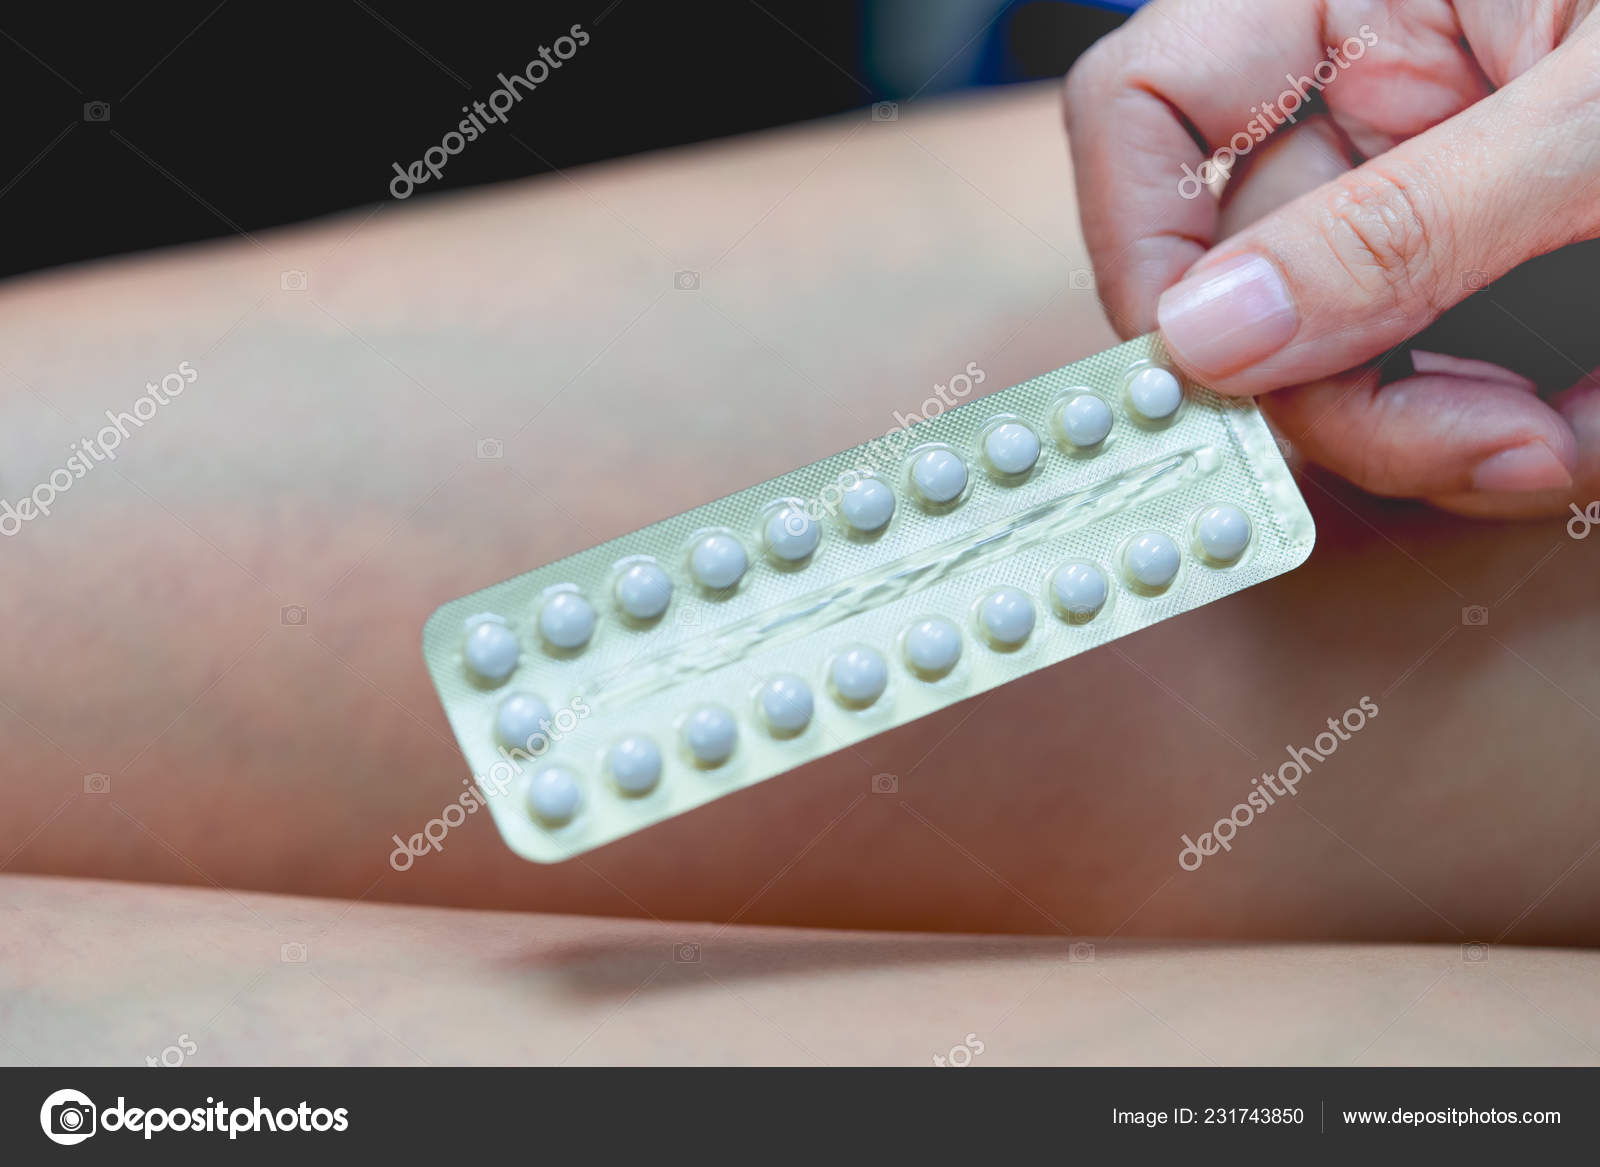 Противозачаточные таблетки в руке